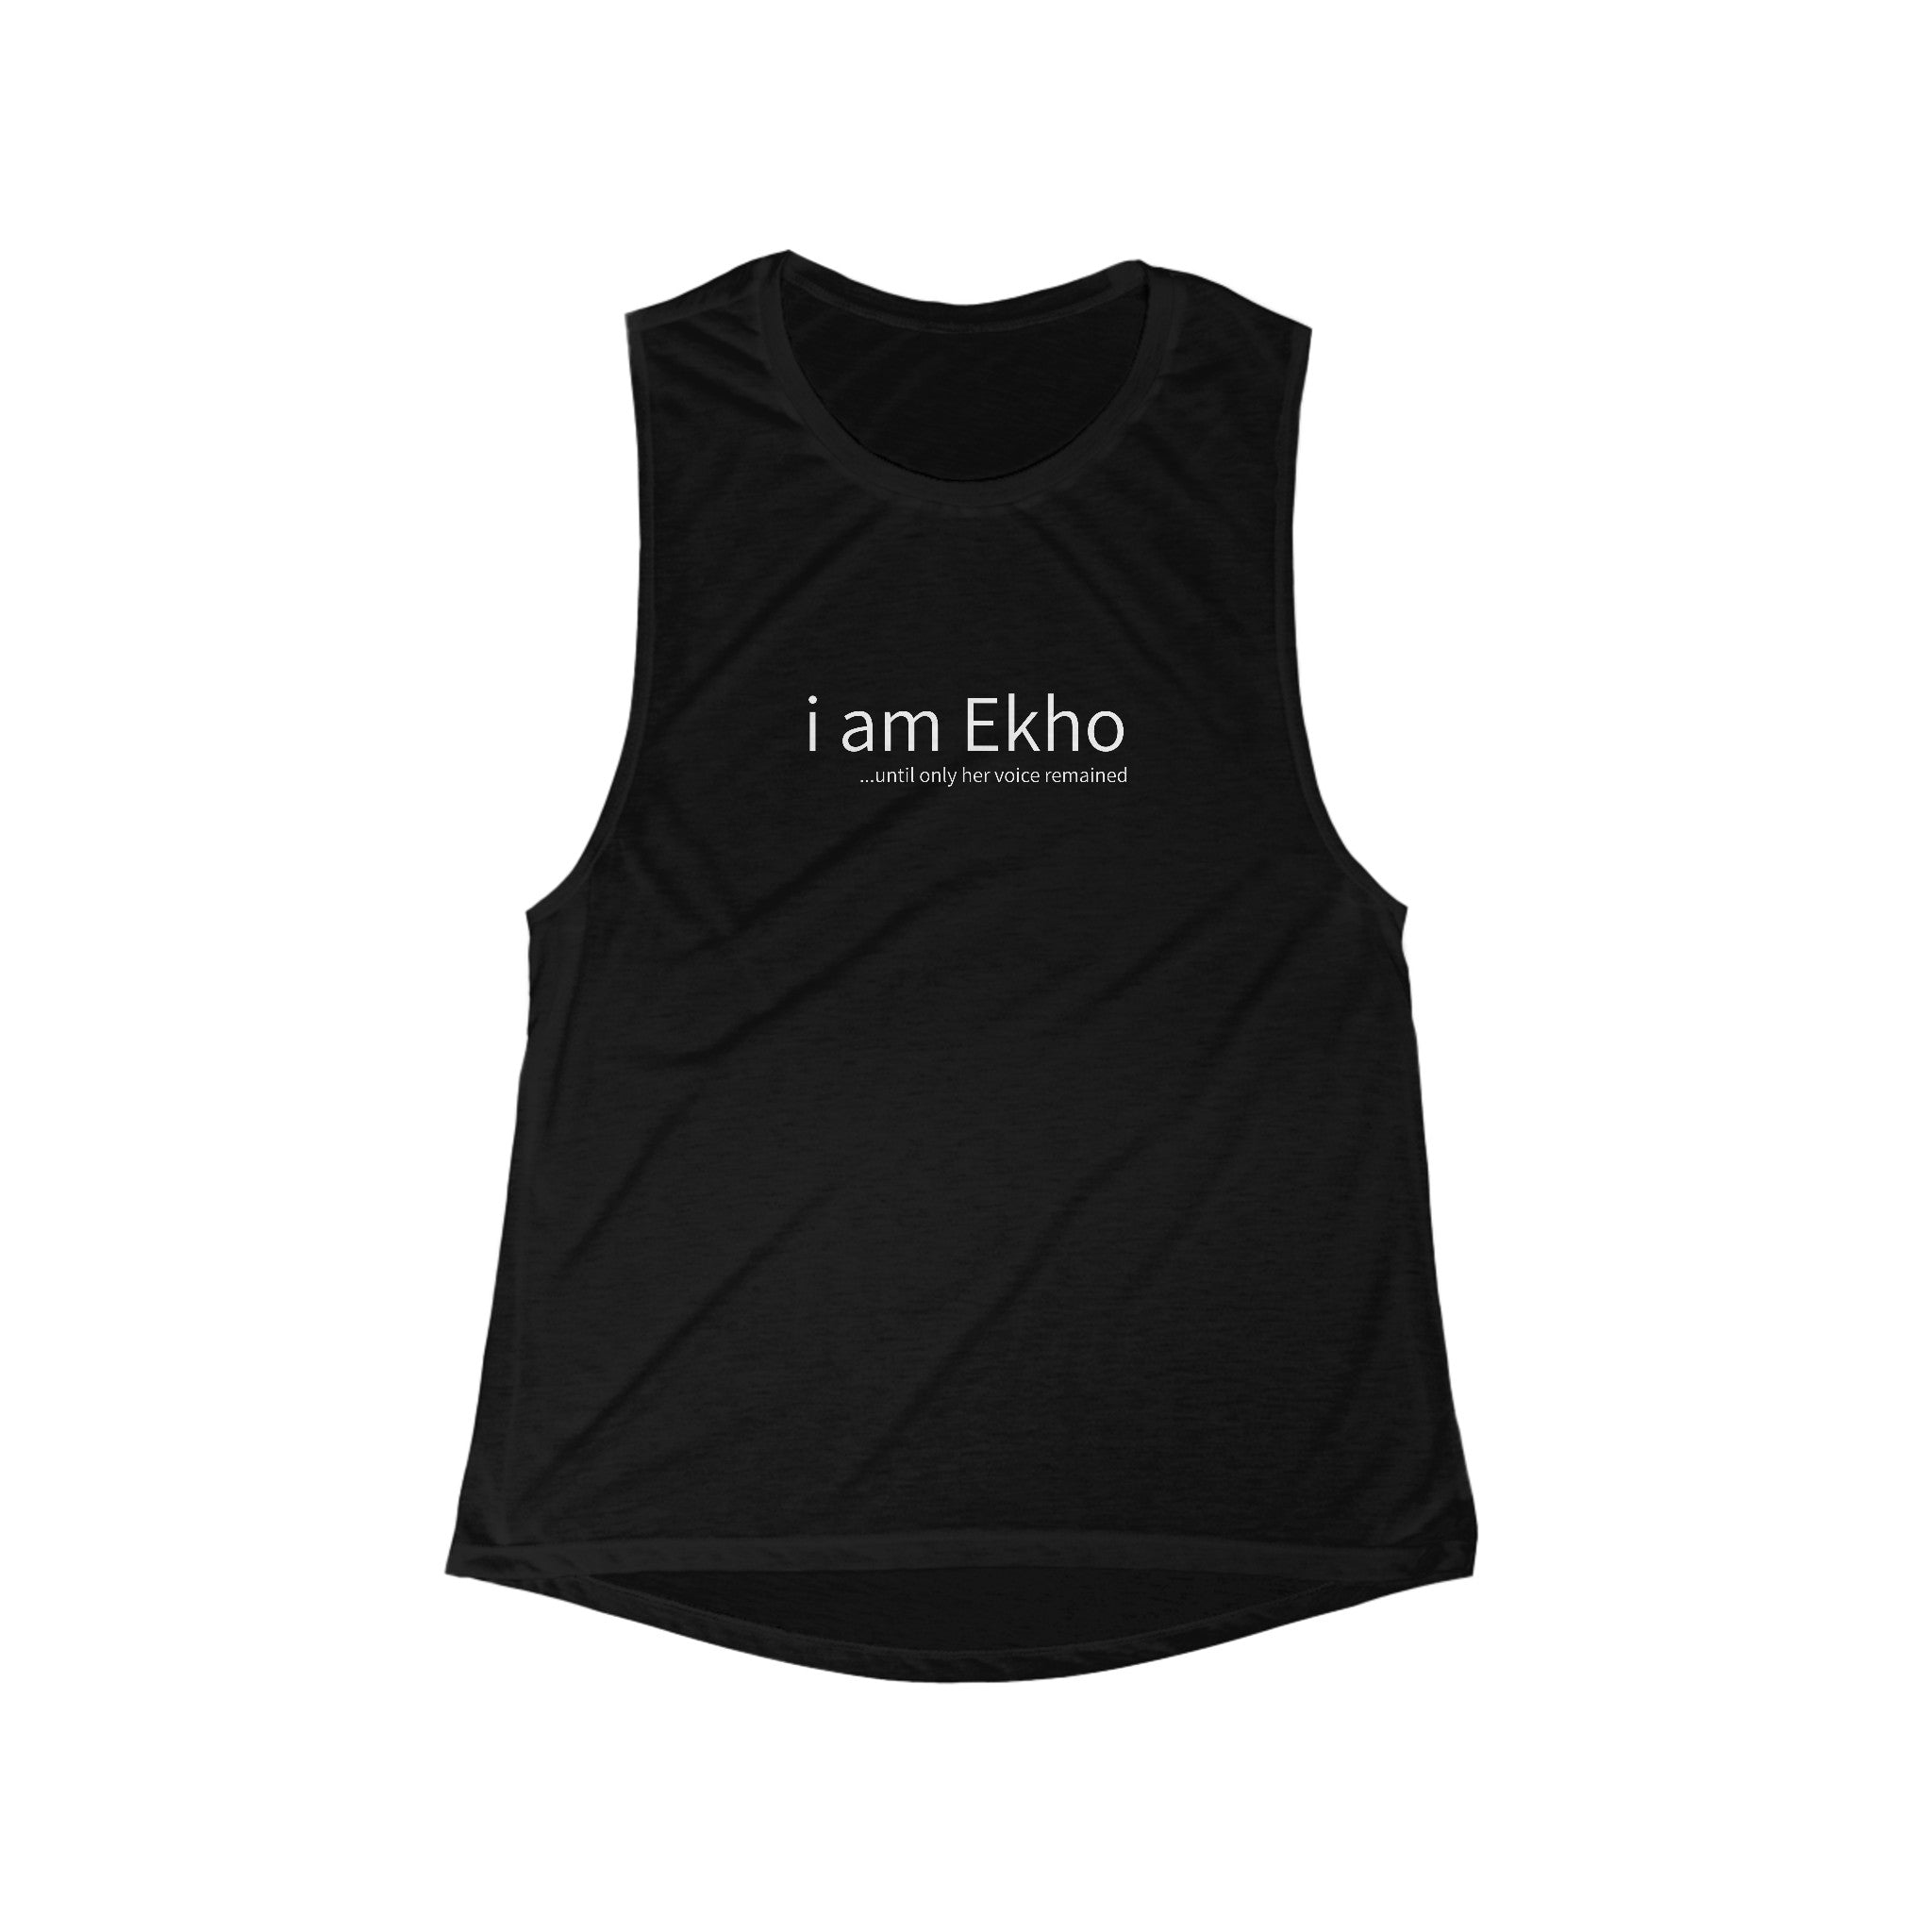 i am Ekho (Flowy Scoop Workout Shirt)